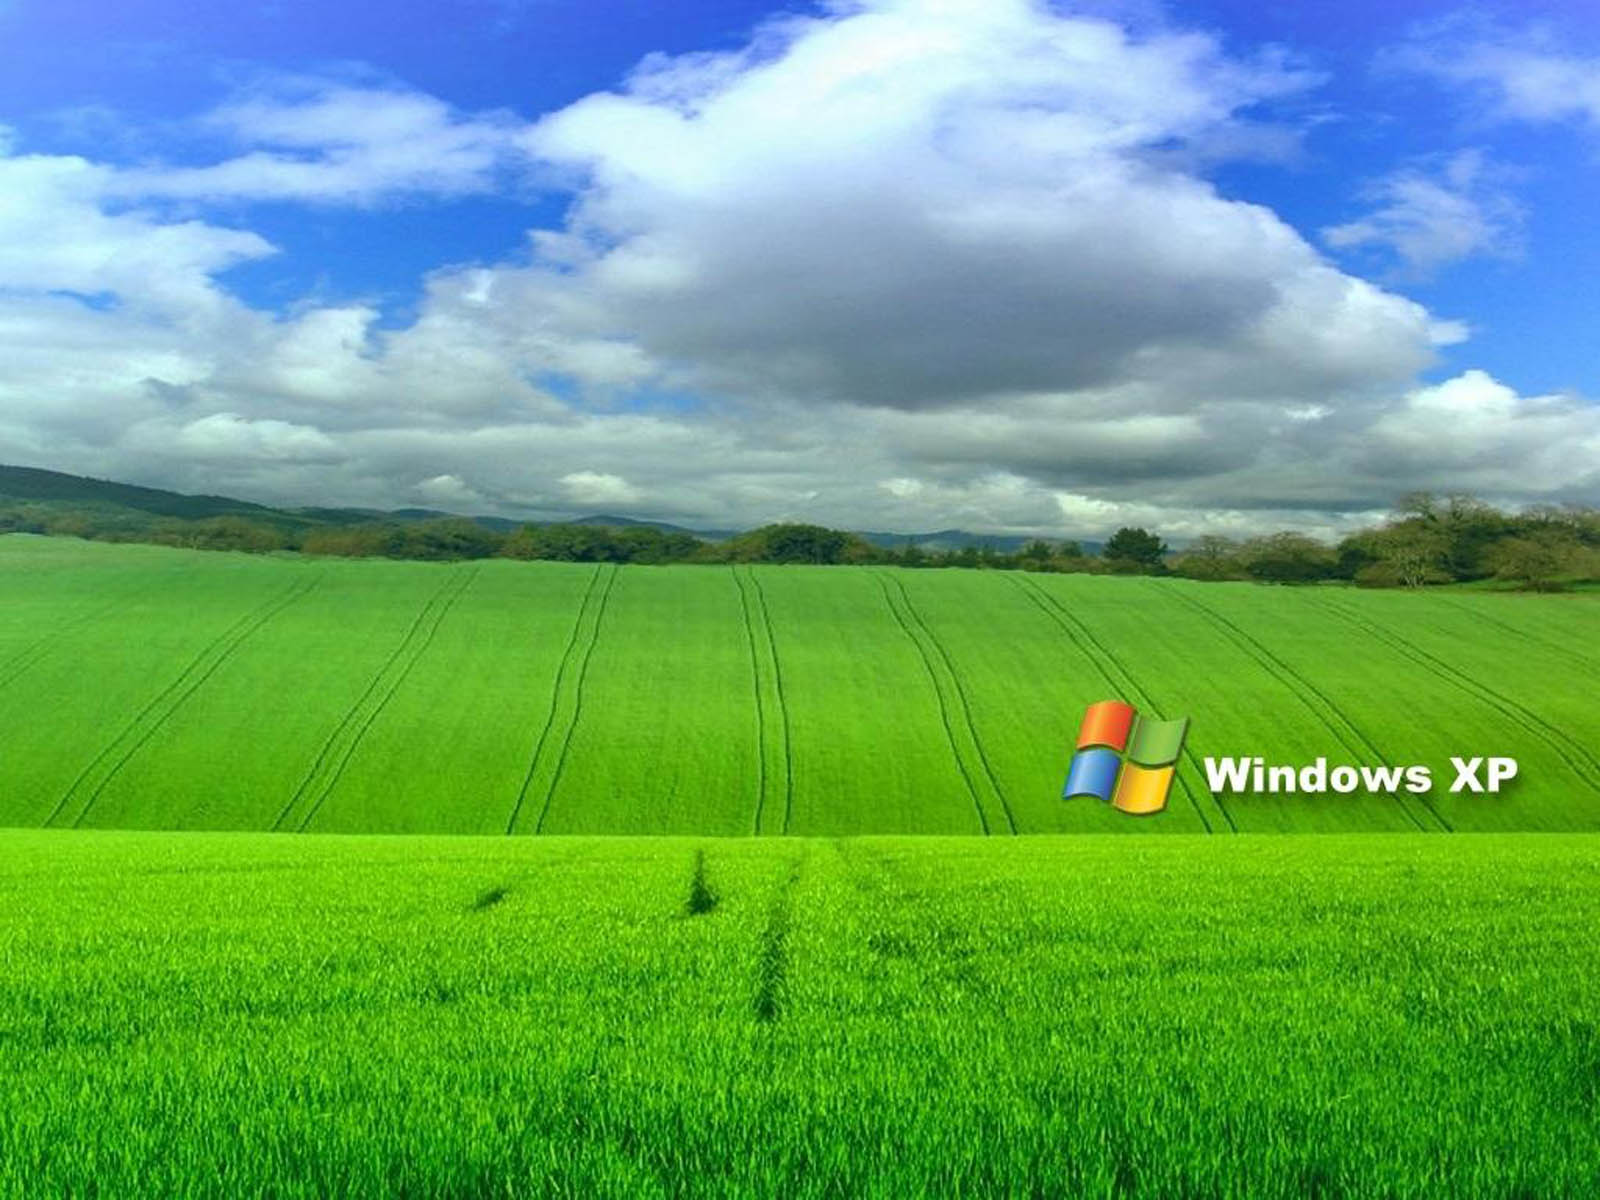 Các bức ảnh hình nền trong Windows XP thật sự đẹp và độc đáo. Nếu bạn yêu quý thiên nhiên và cái đẹp dịu dàng, hãy xem ảnh liên quan đến XP Wallpaper. Đảm bảo bạn sẽ phải gật đầu thán phục trước vẻ đẹp của chúng.